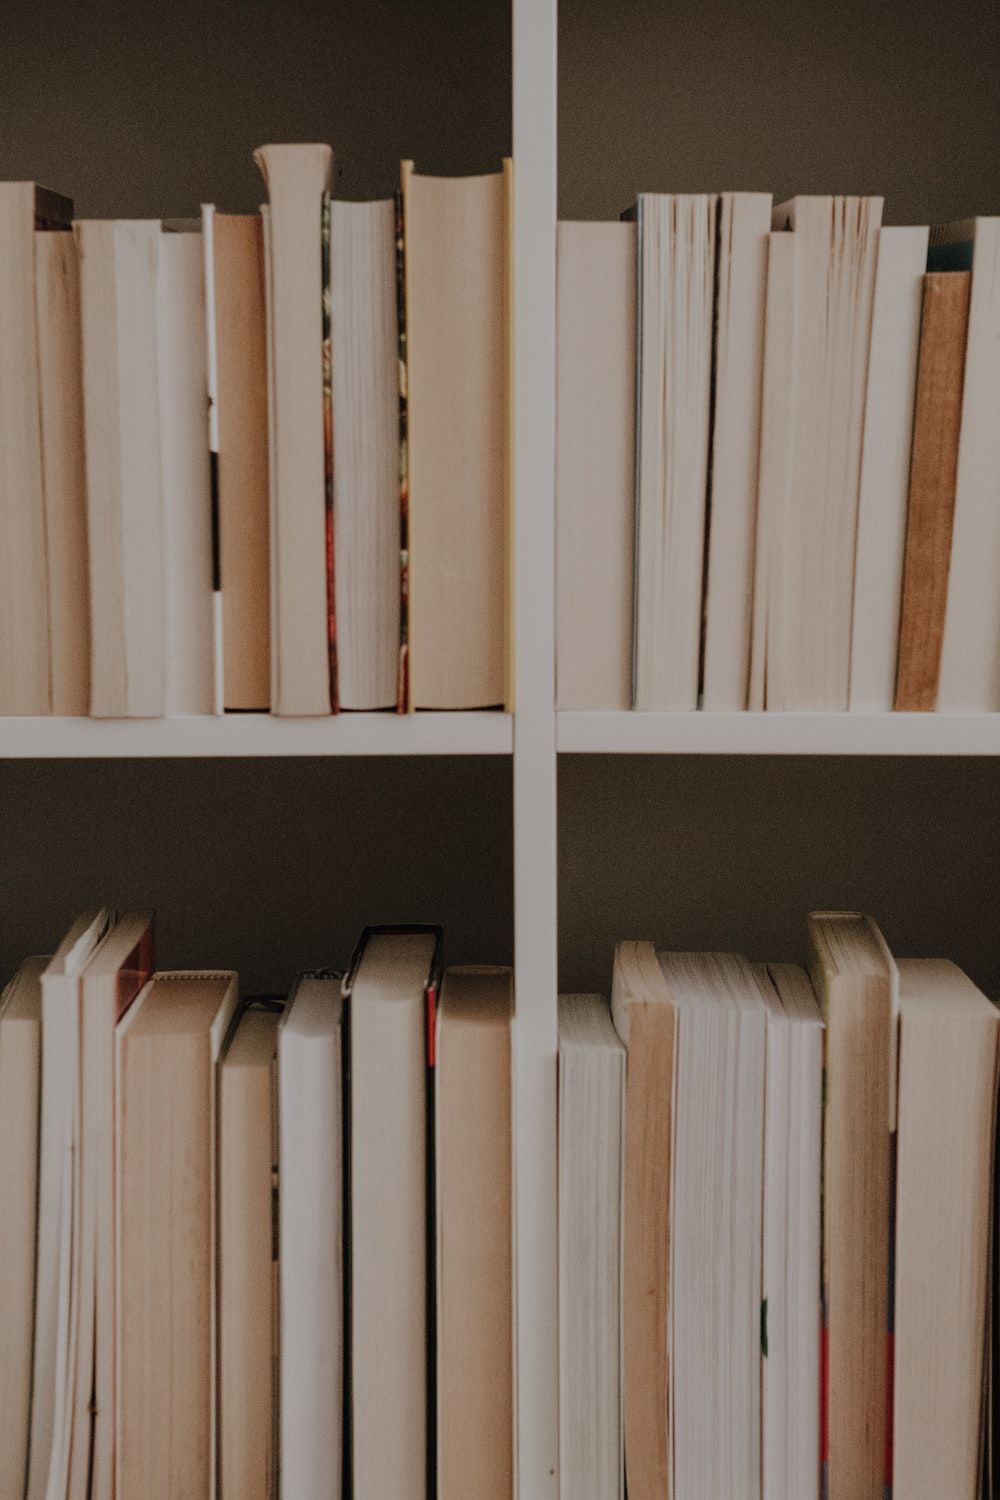 A row of books on a shelf photo